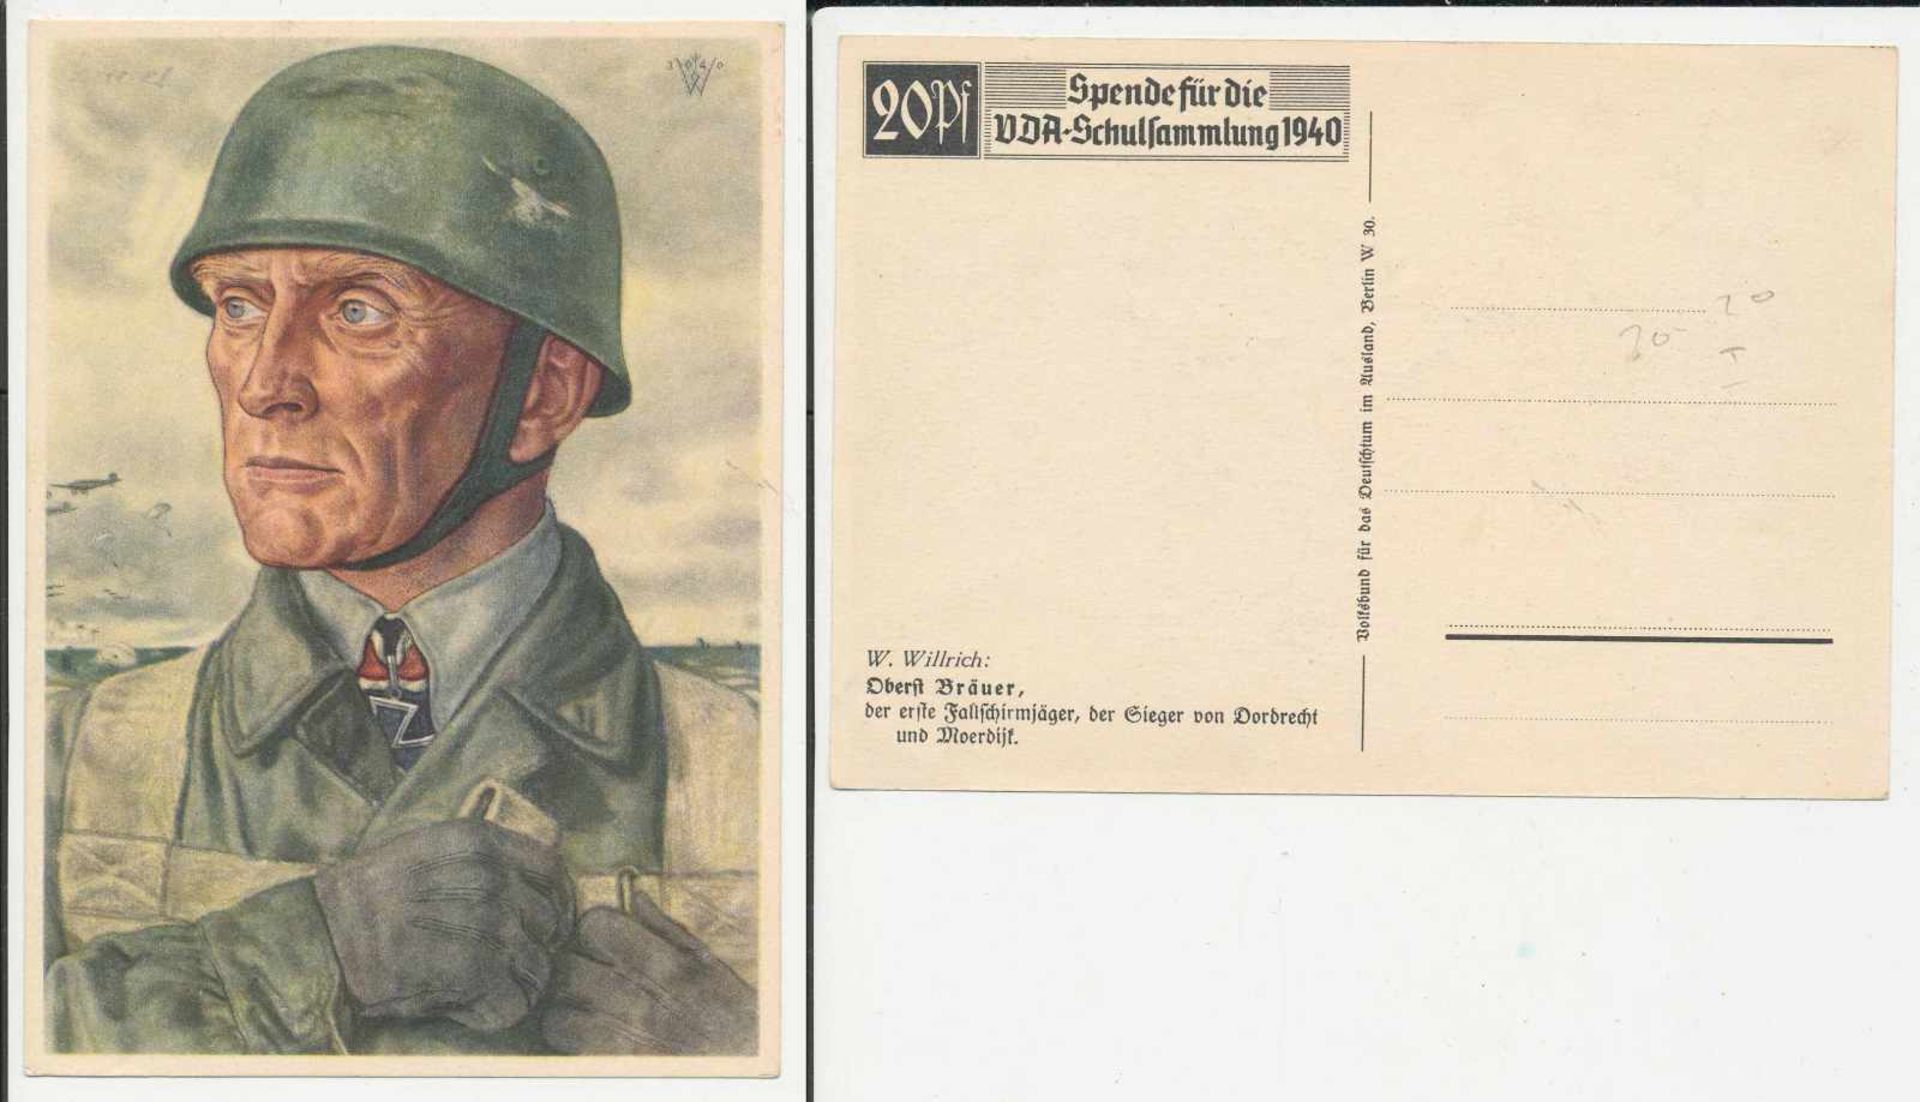 1 Postkarte, großes Format, col., Oberst Bräuer, W. Willrich, VDA, Schulsammlung, ungelaufen,